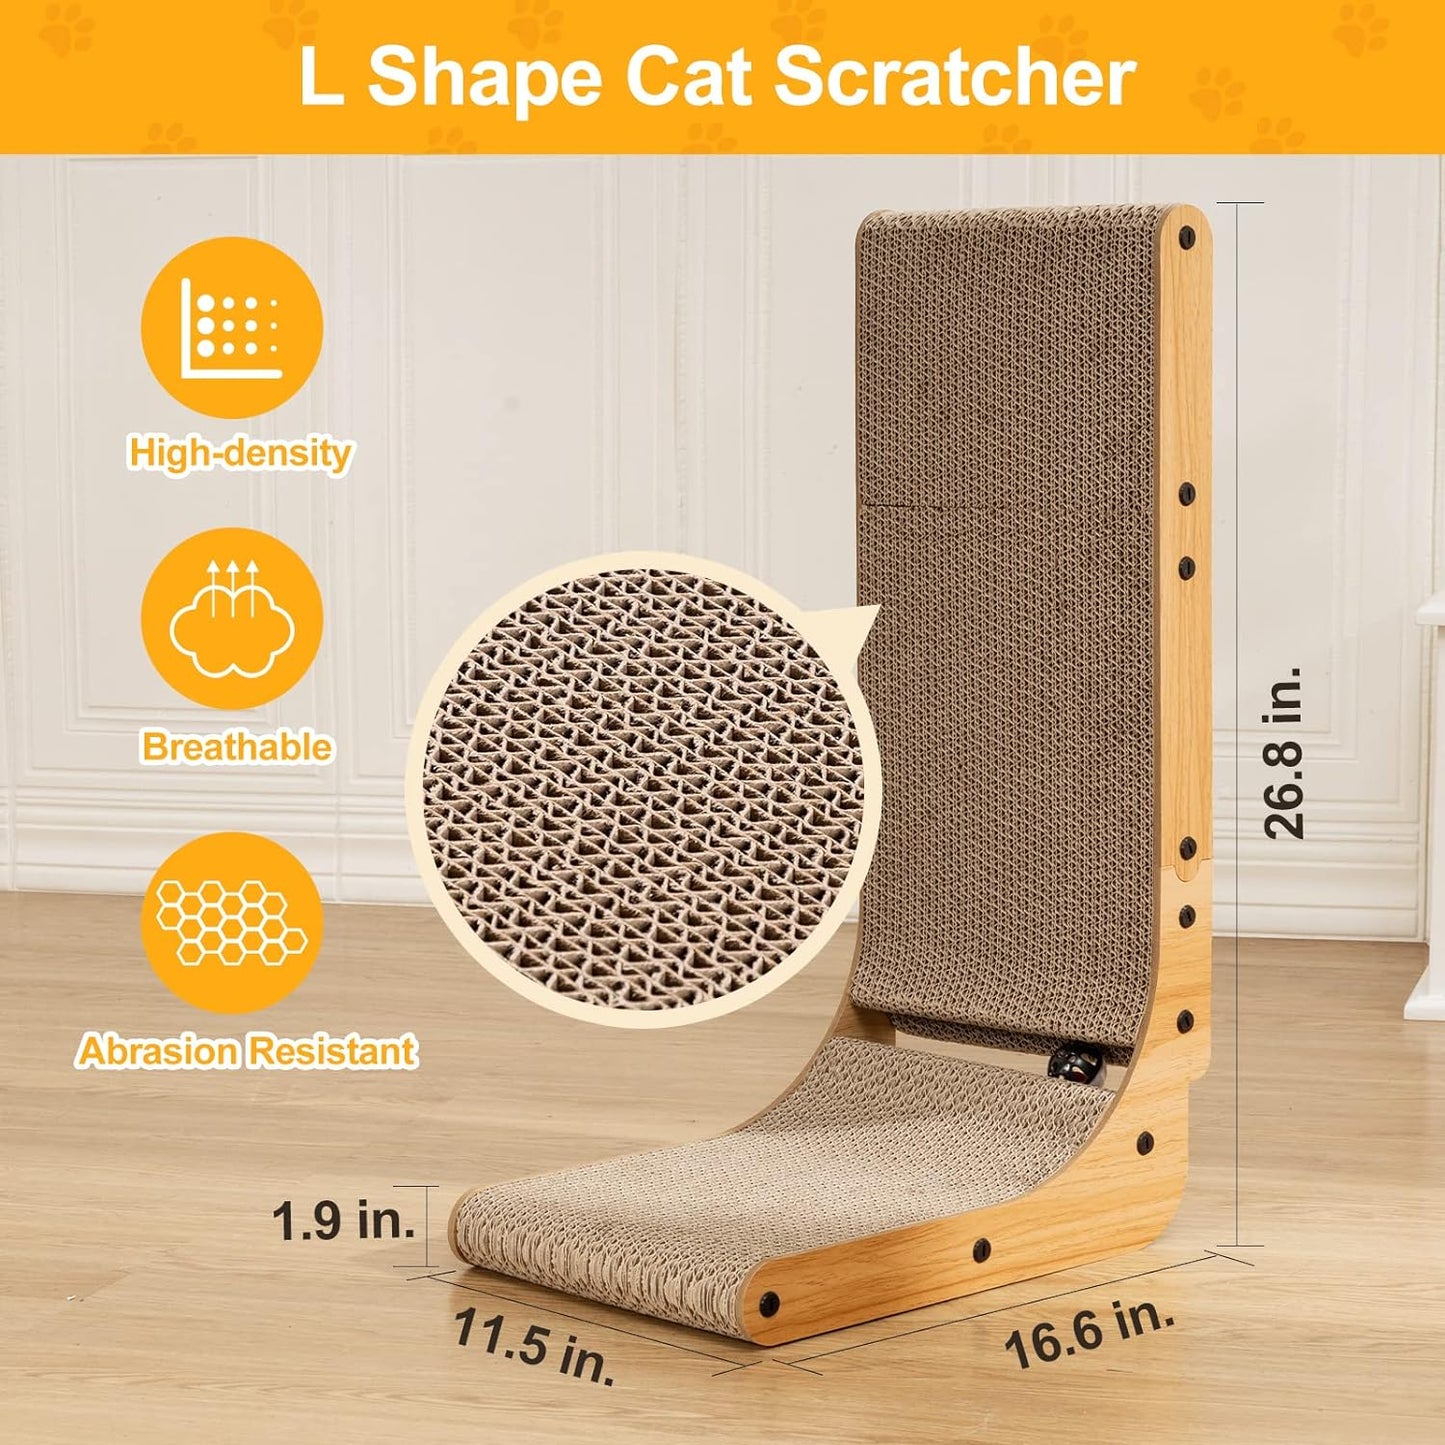 L Shape Cat Scratcher